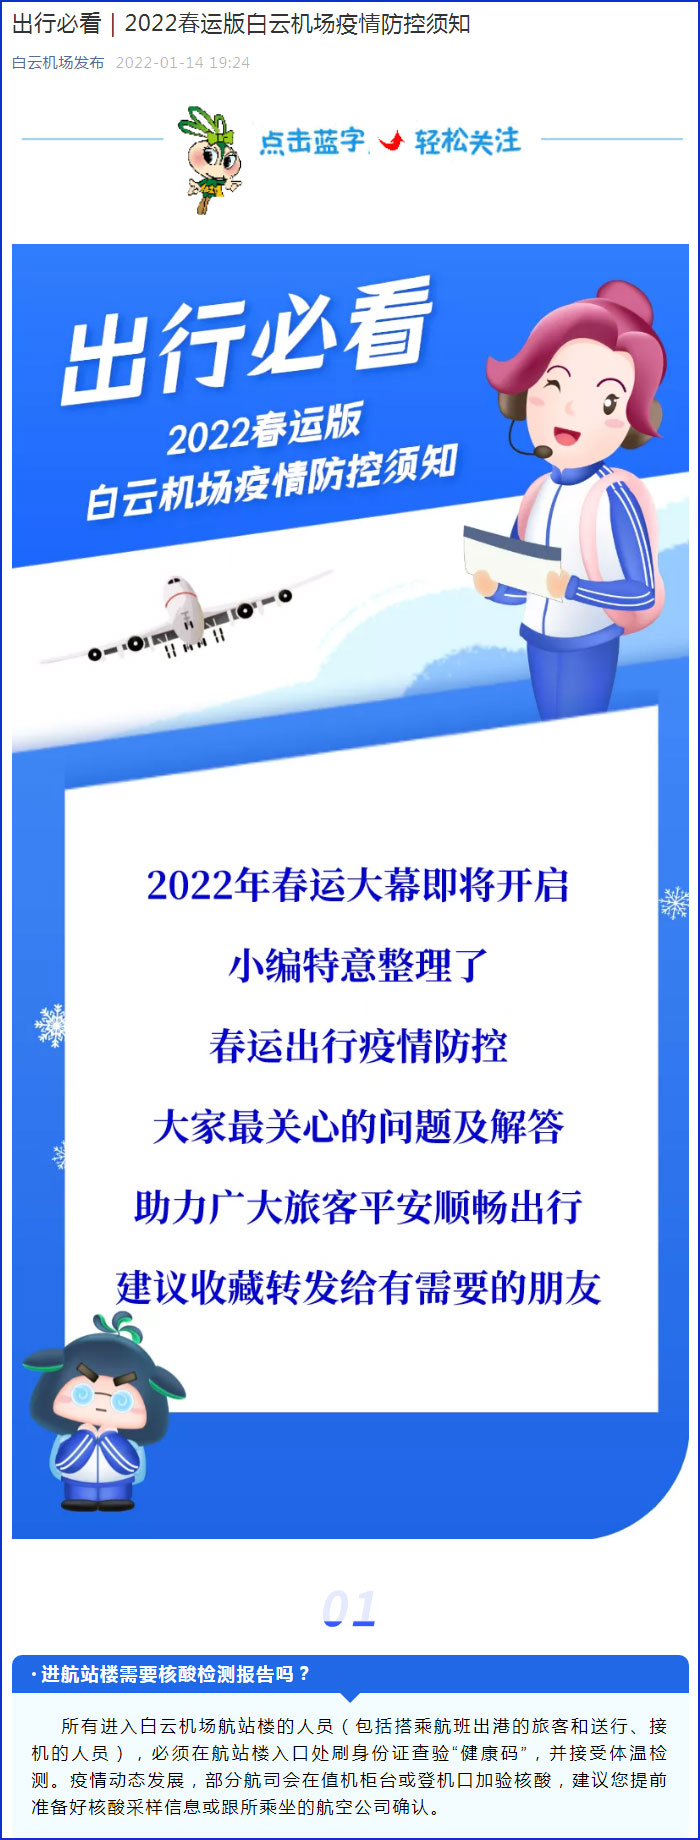 1月14日 广州白云机场发布2022年春运疫情防控指引